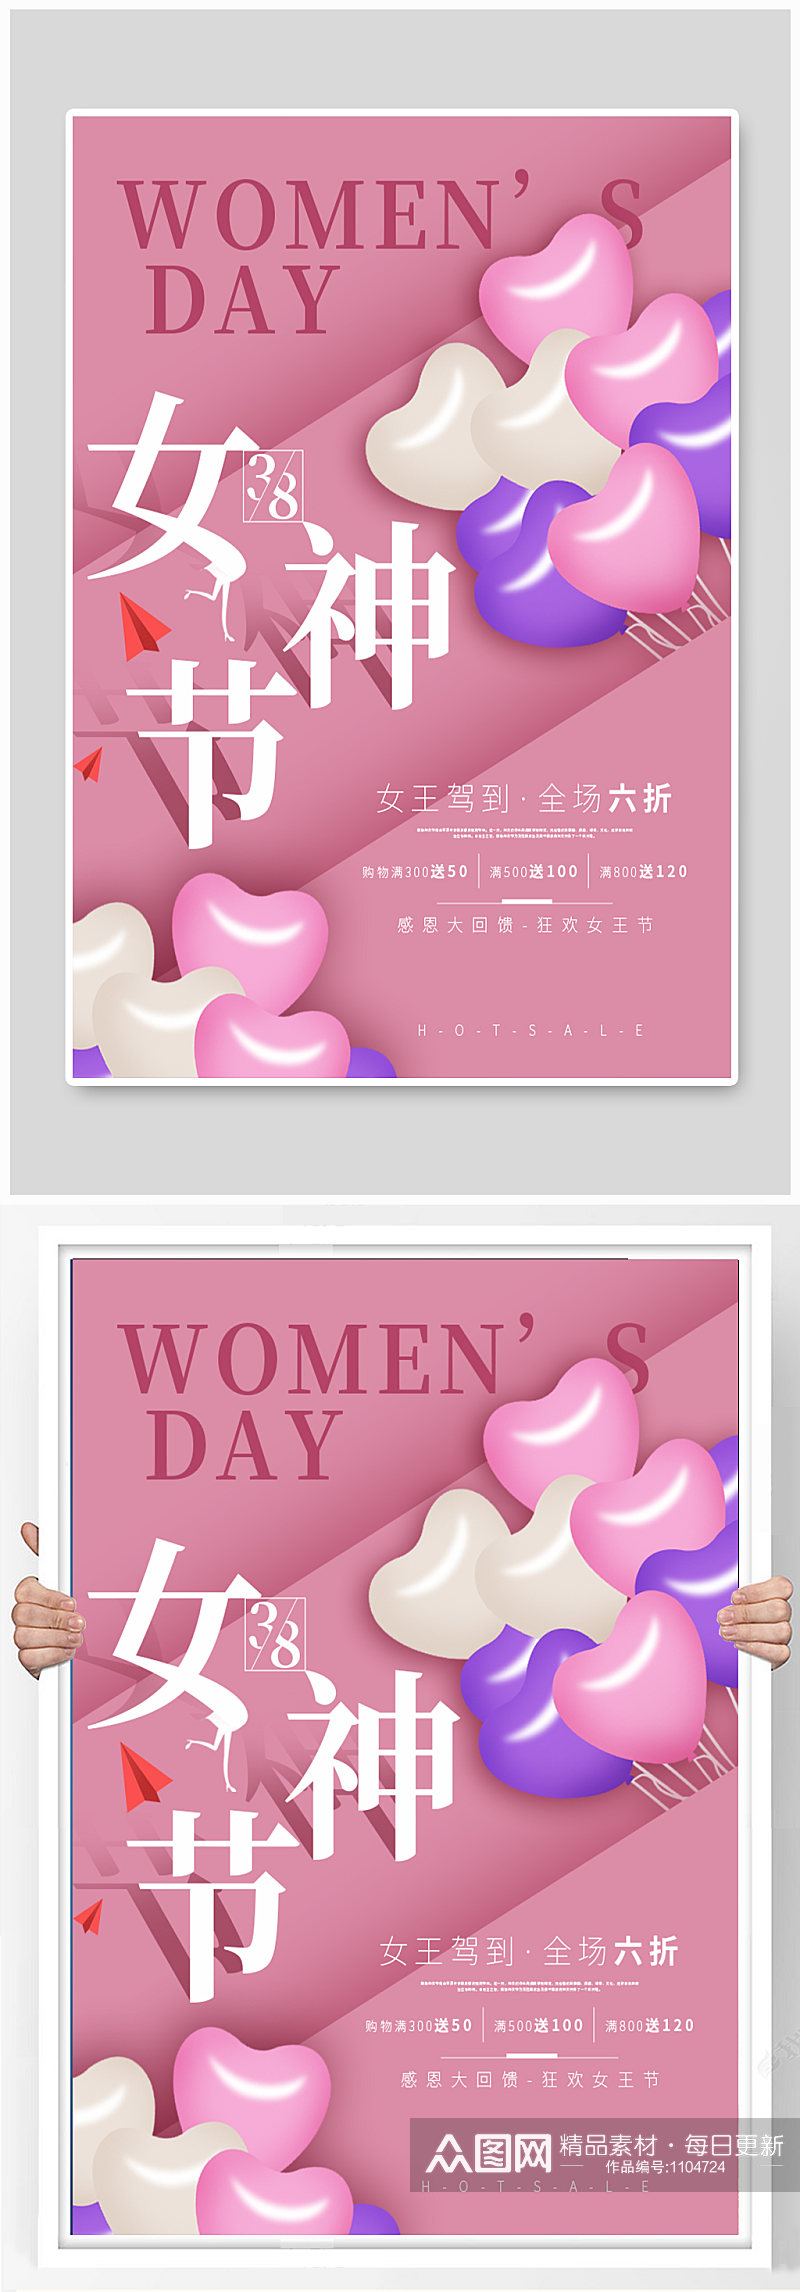 38妇女节促销节日海报素材